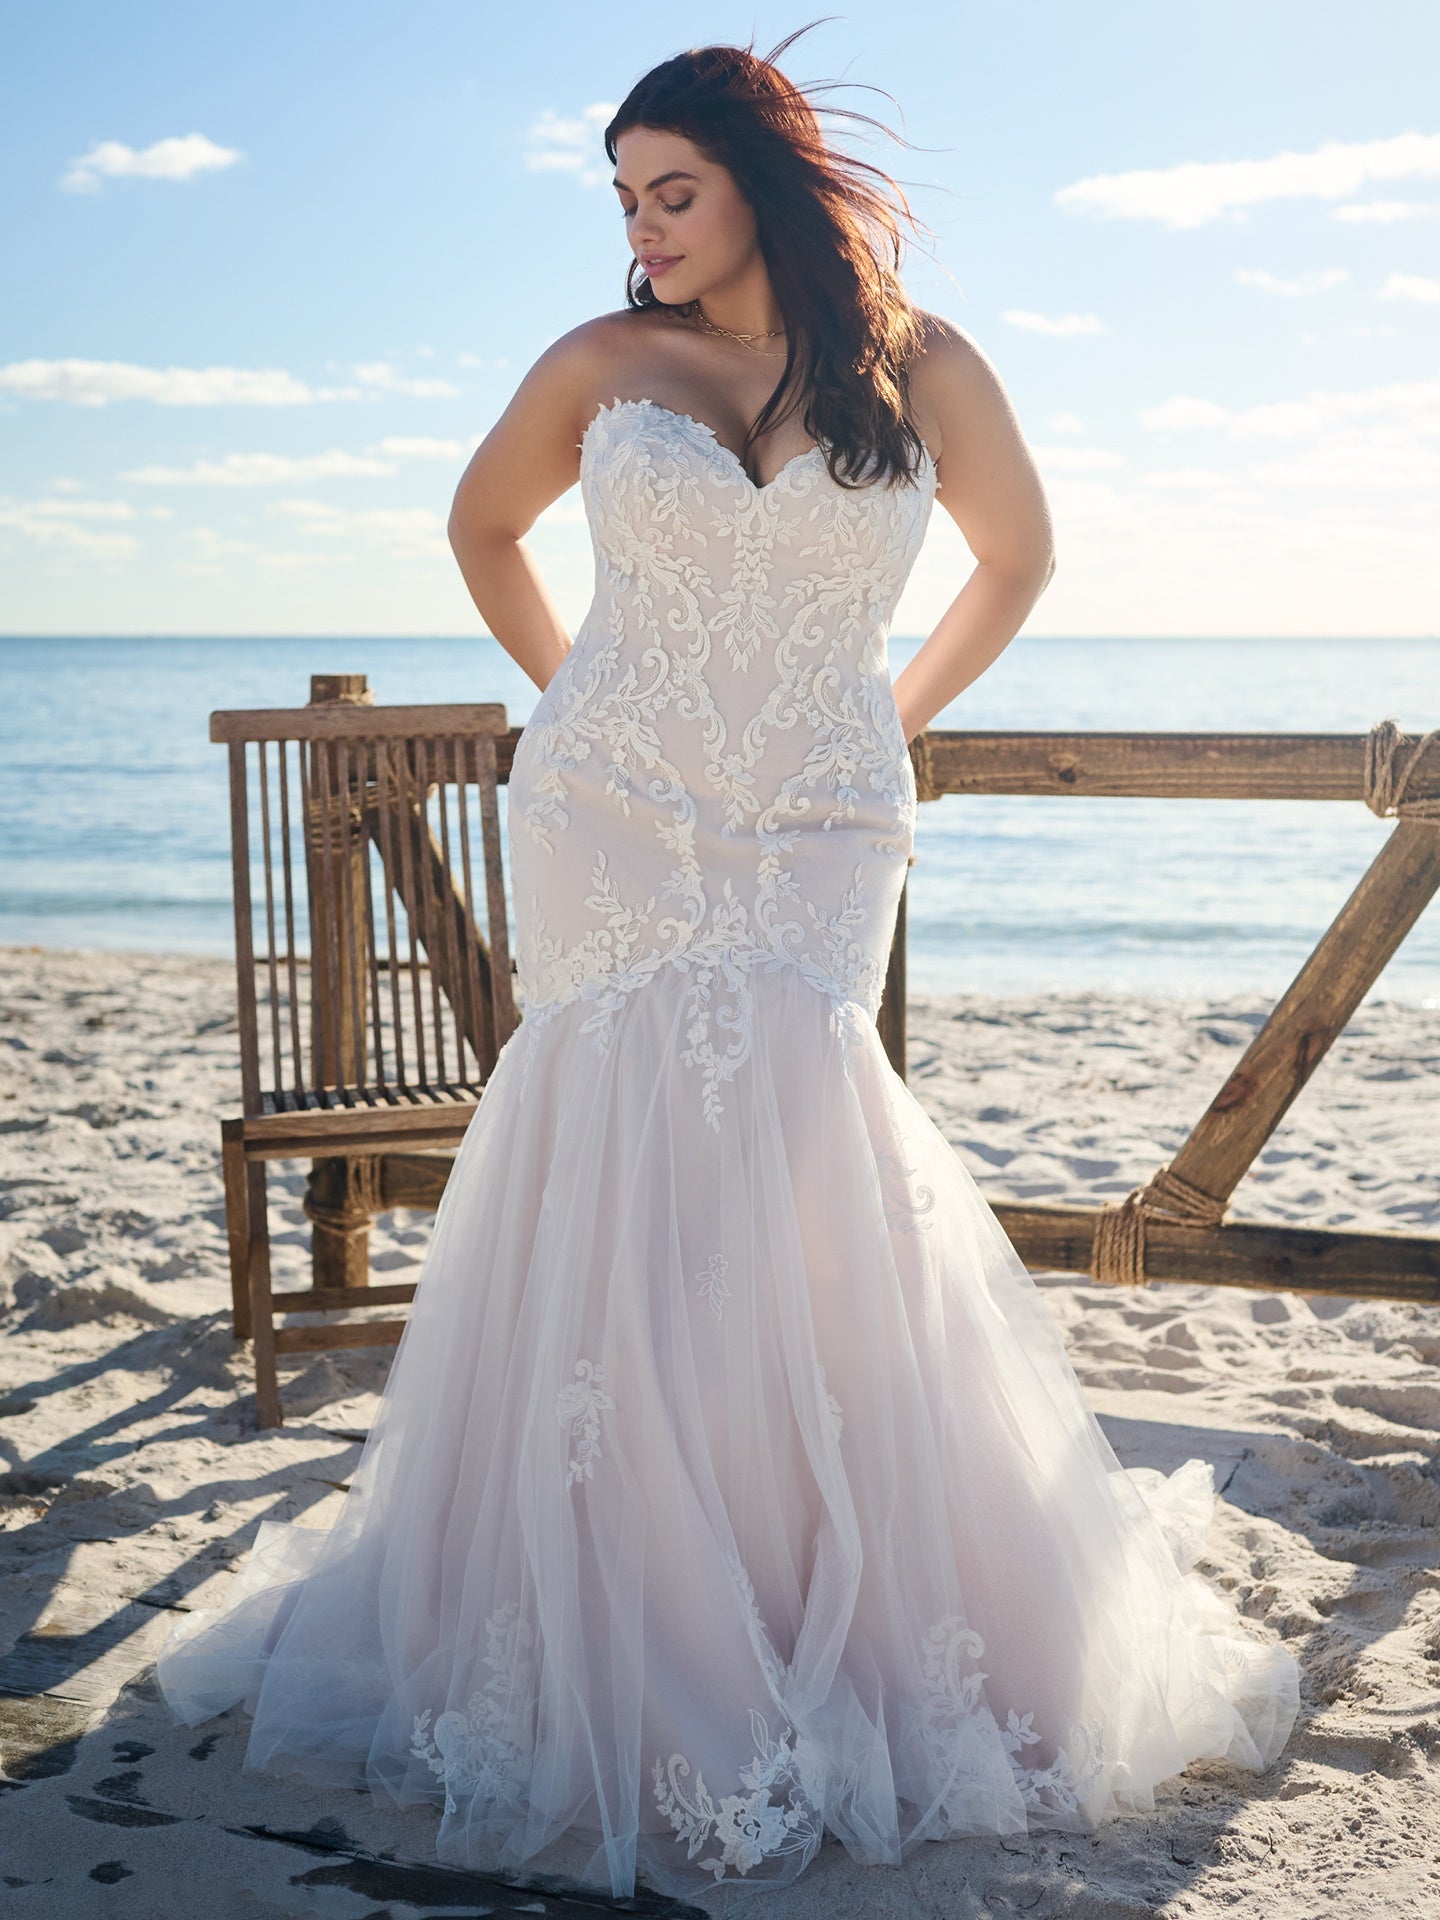 Anita by Rebecca Ingram - Wedding Dresses